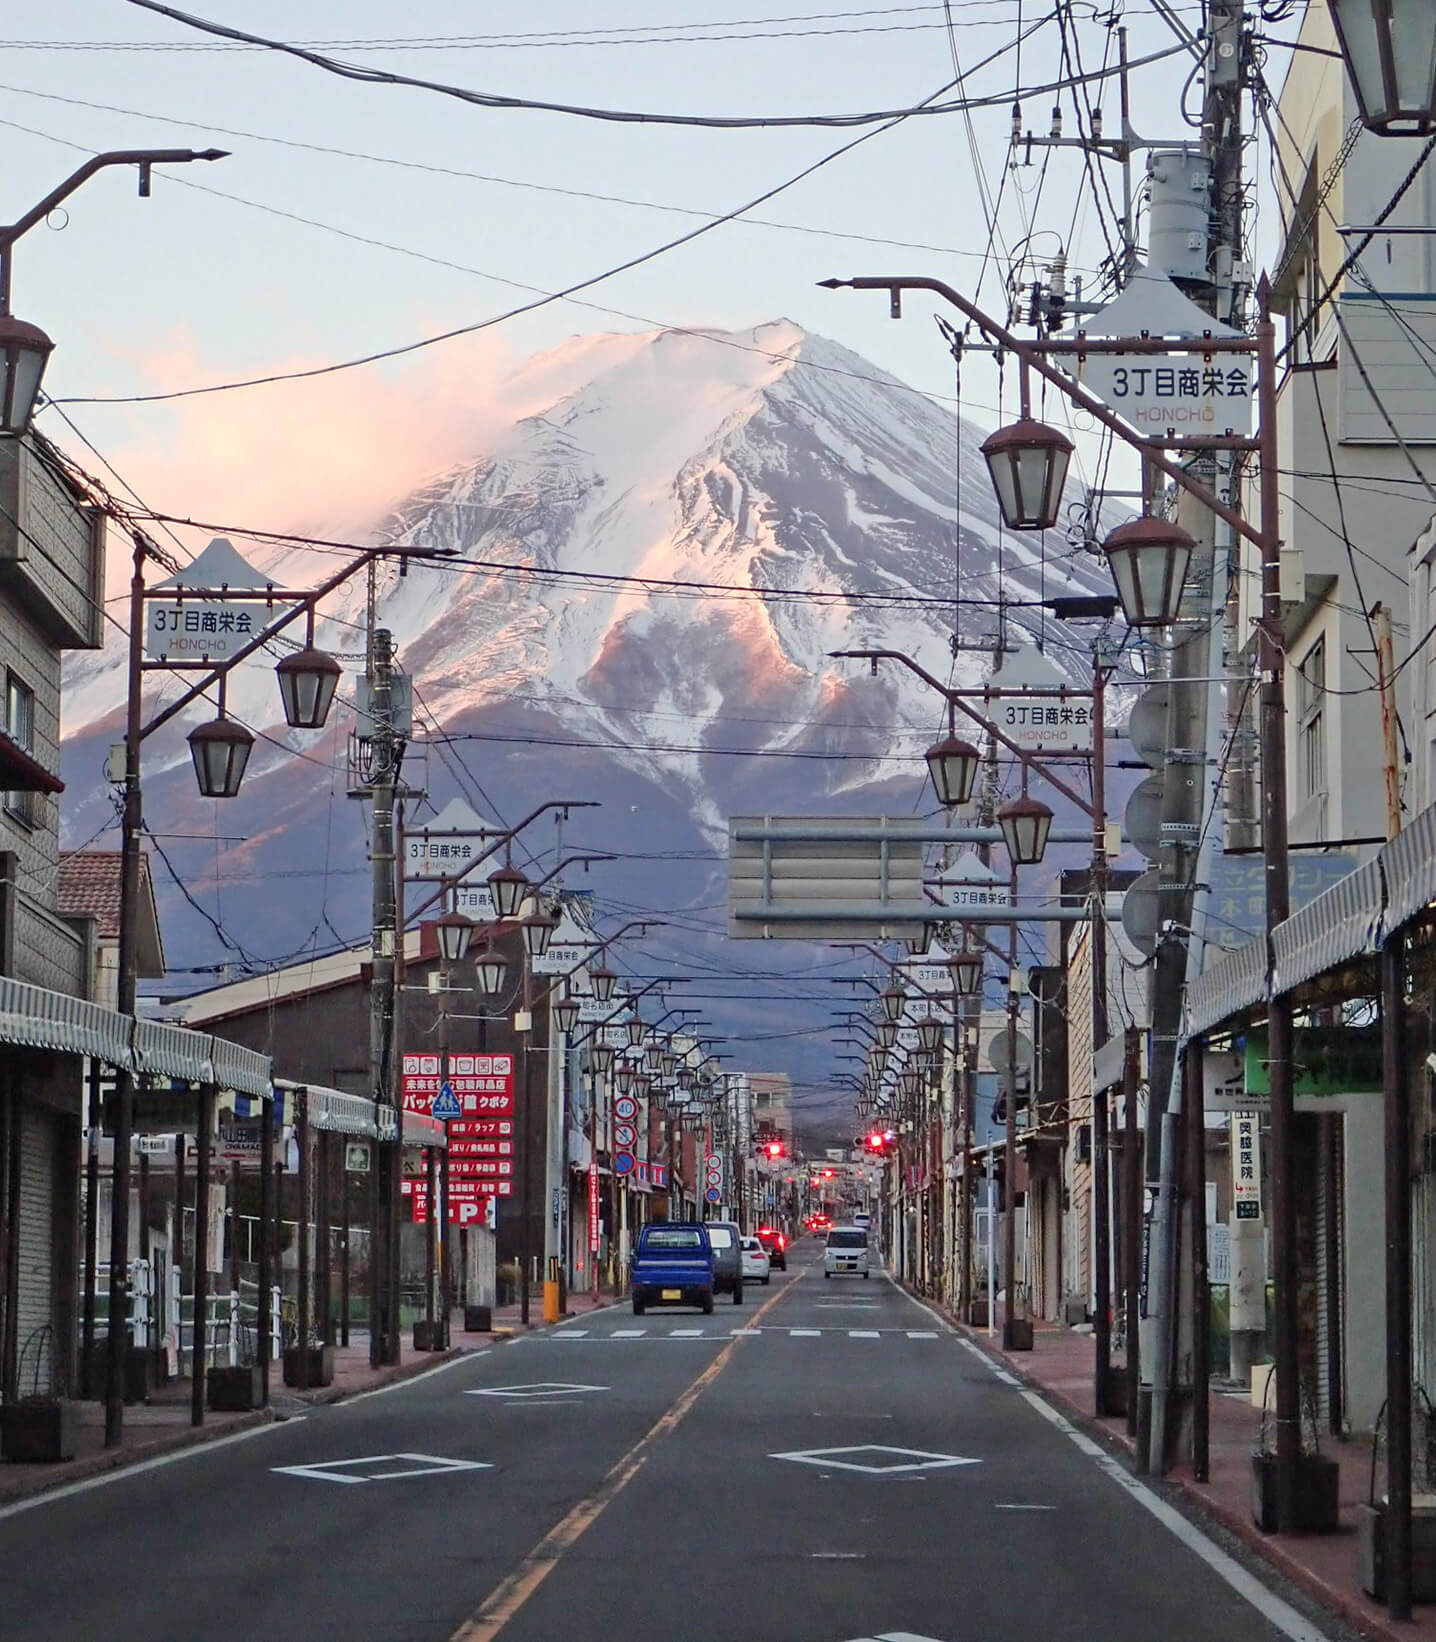 山梨県 富士吉田市のイメージ画像が表示されています。